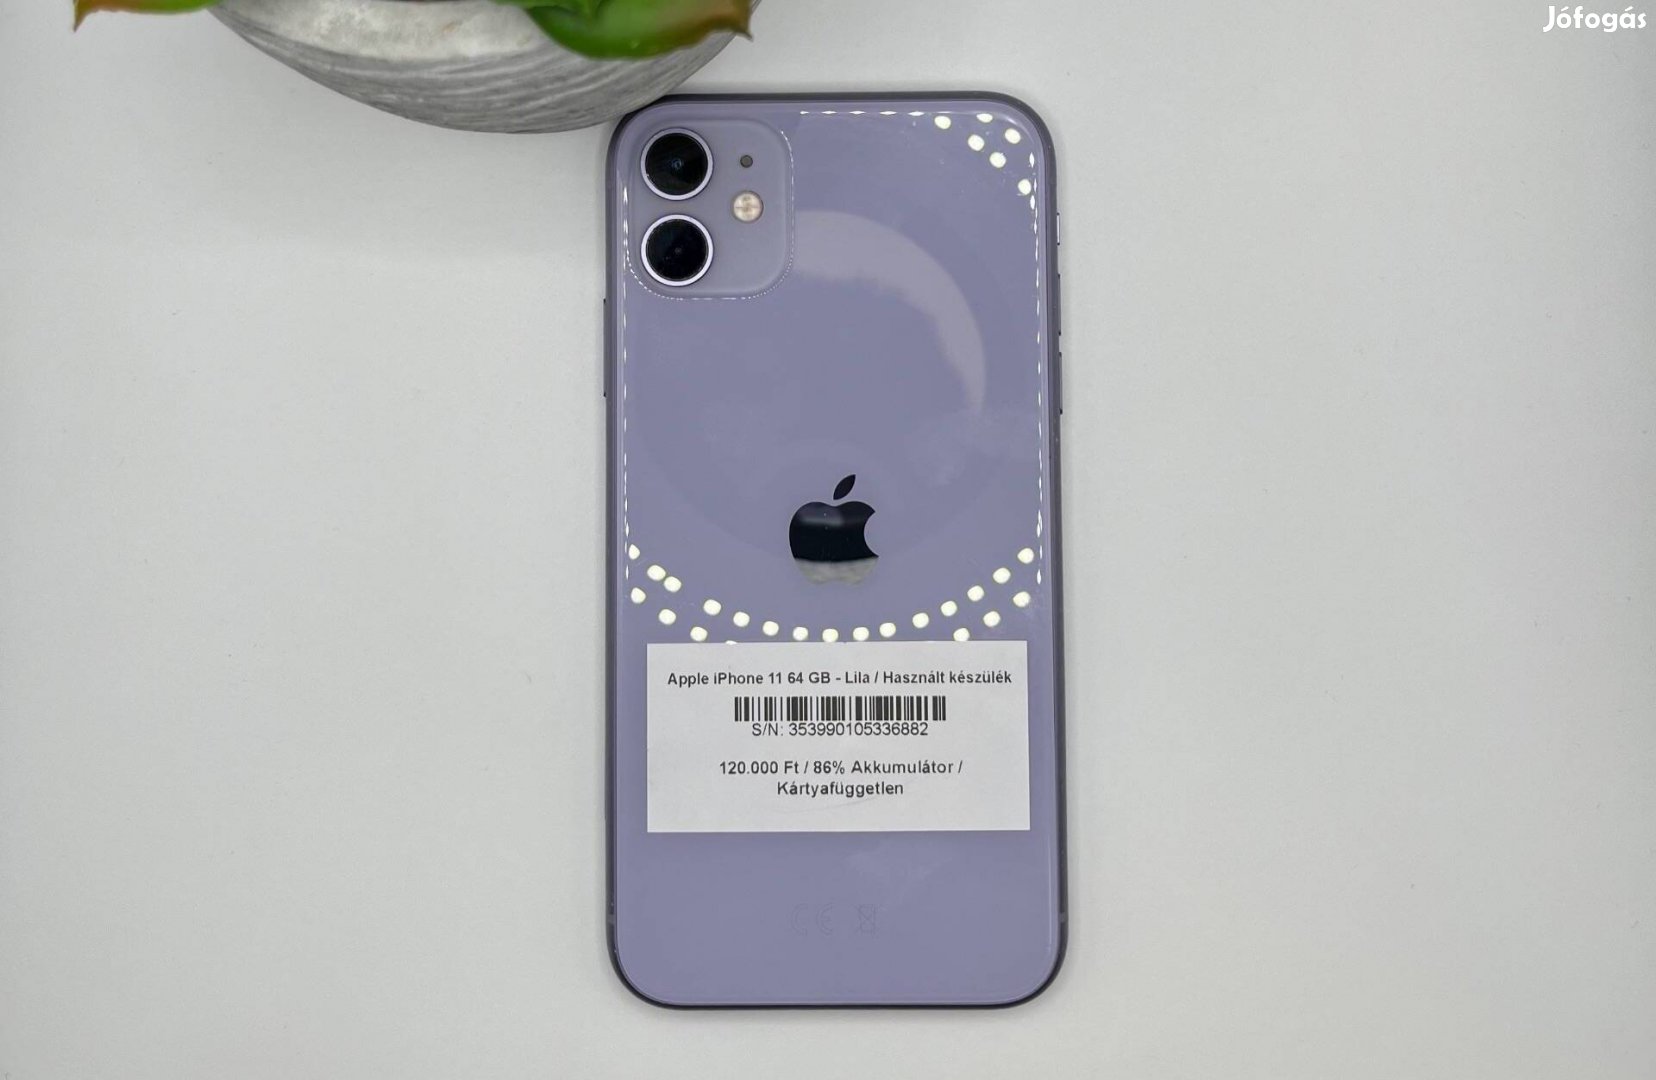 Apple iphone 11 64 GB - Kártyafüggetlen / Használt készülék